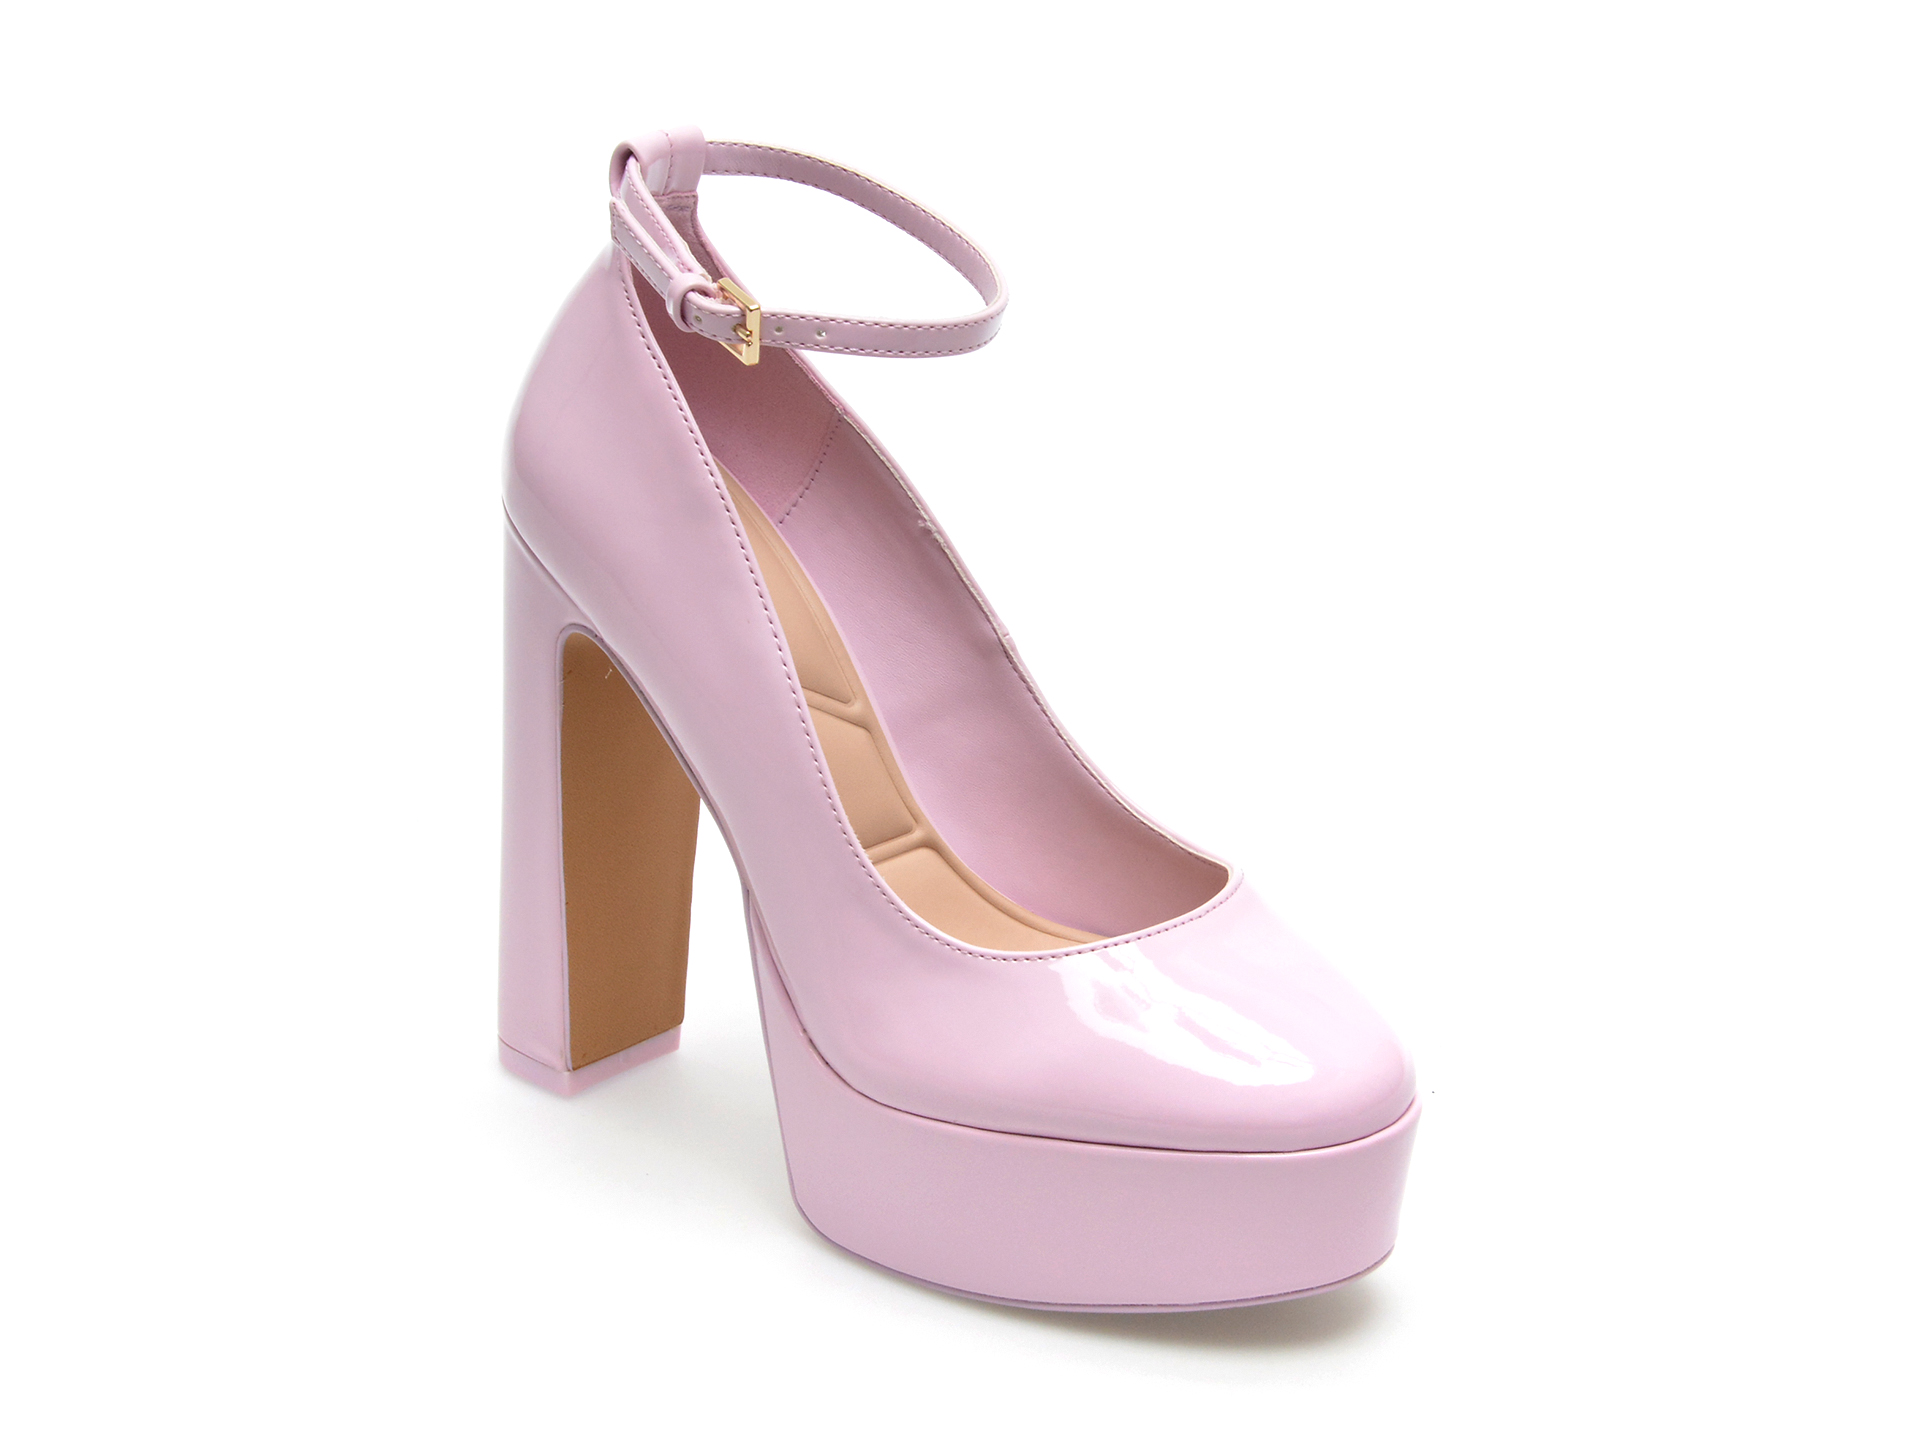 Pantofi ALDO roz, FONDA650, din piele ecologica lacuita femei 2023-03-21